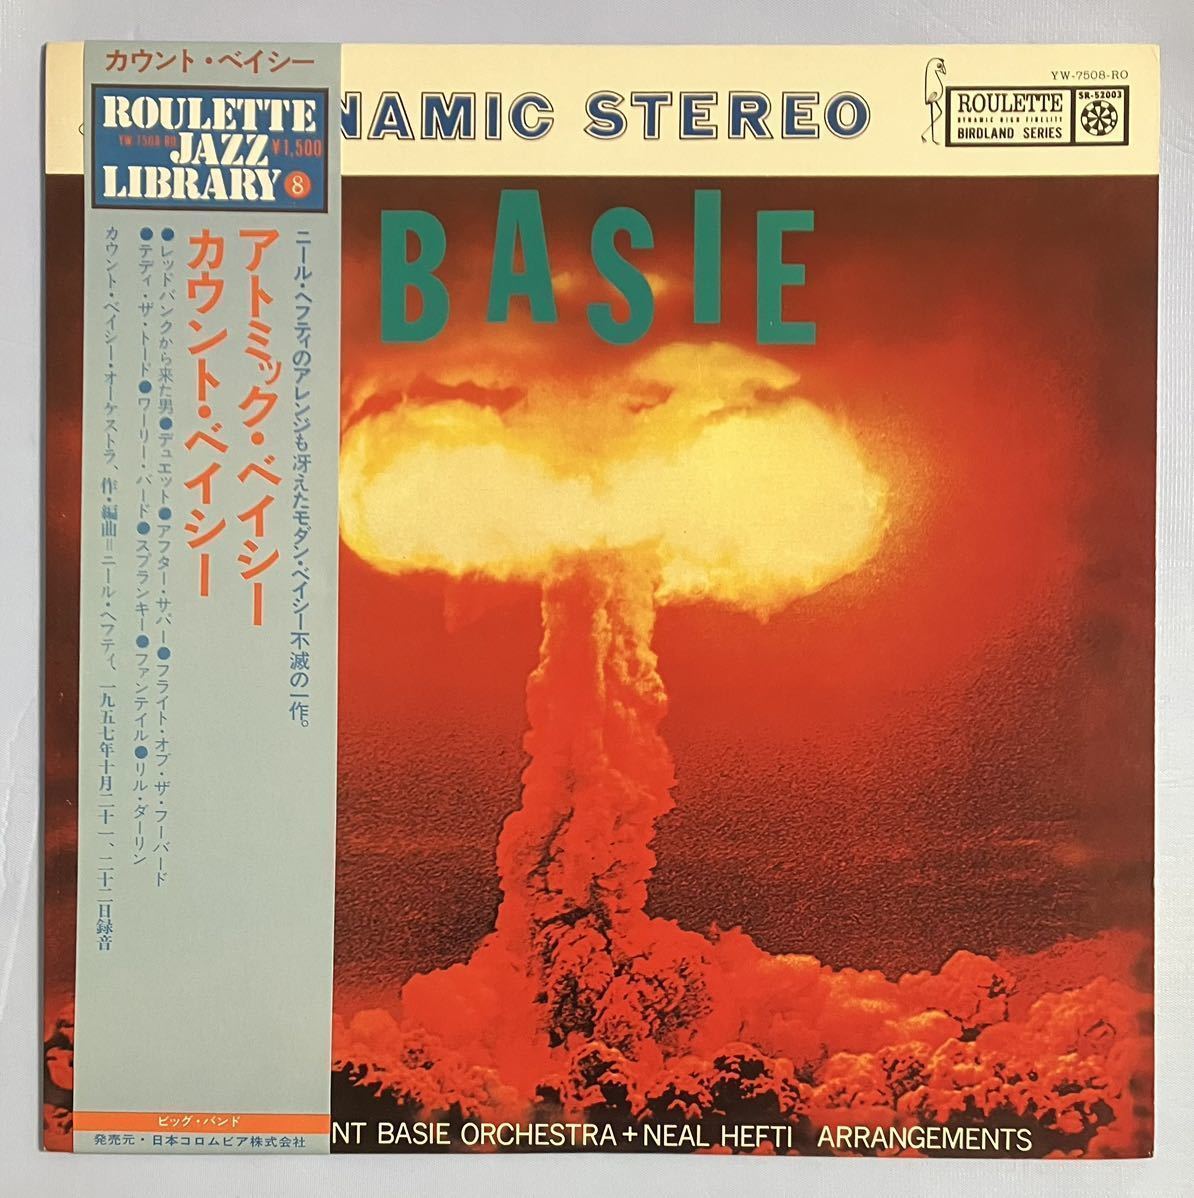 カウント・ベイシー「アトミック・ベイシー」日本盤LP, レコード,ビッグ・バンド・ジャズ, COUNT BASIE, BIG BAND JAZZ_画像1